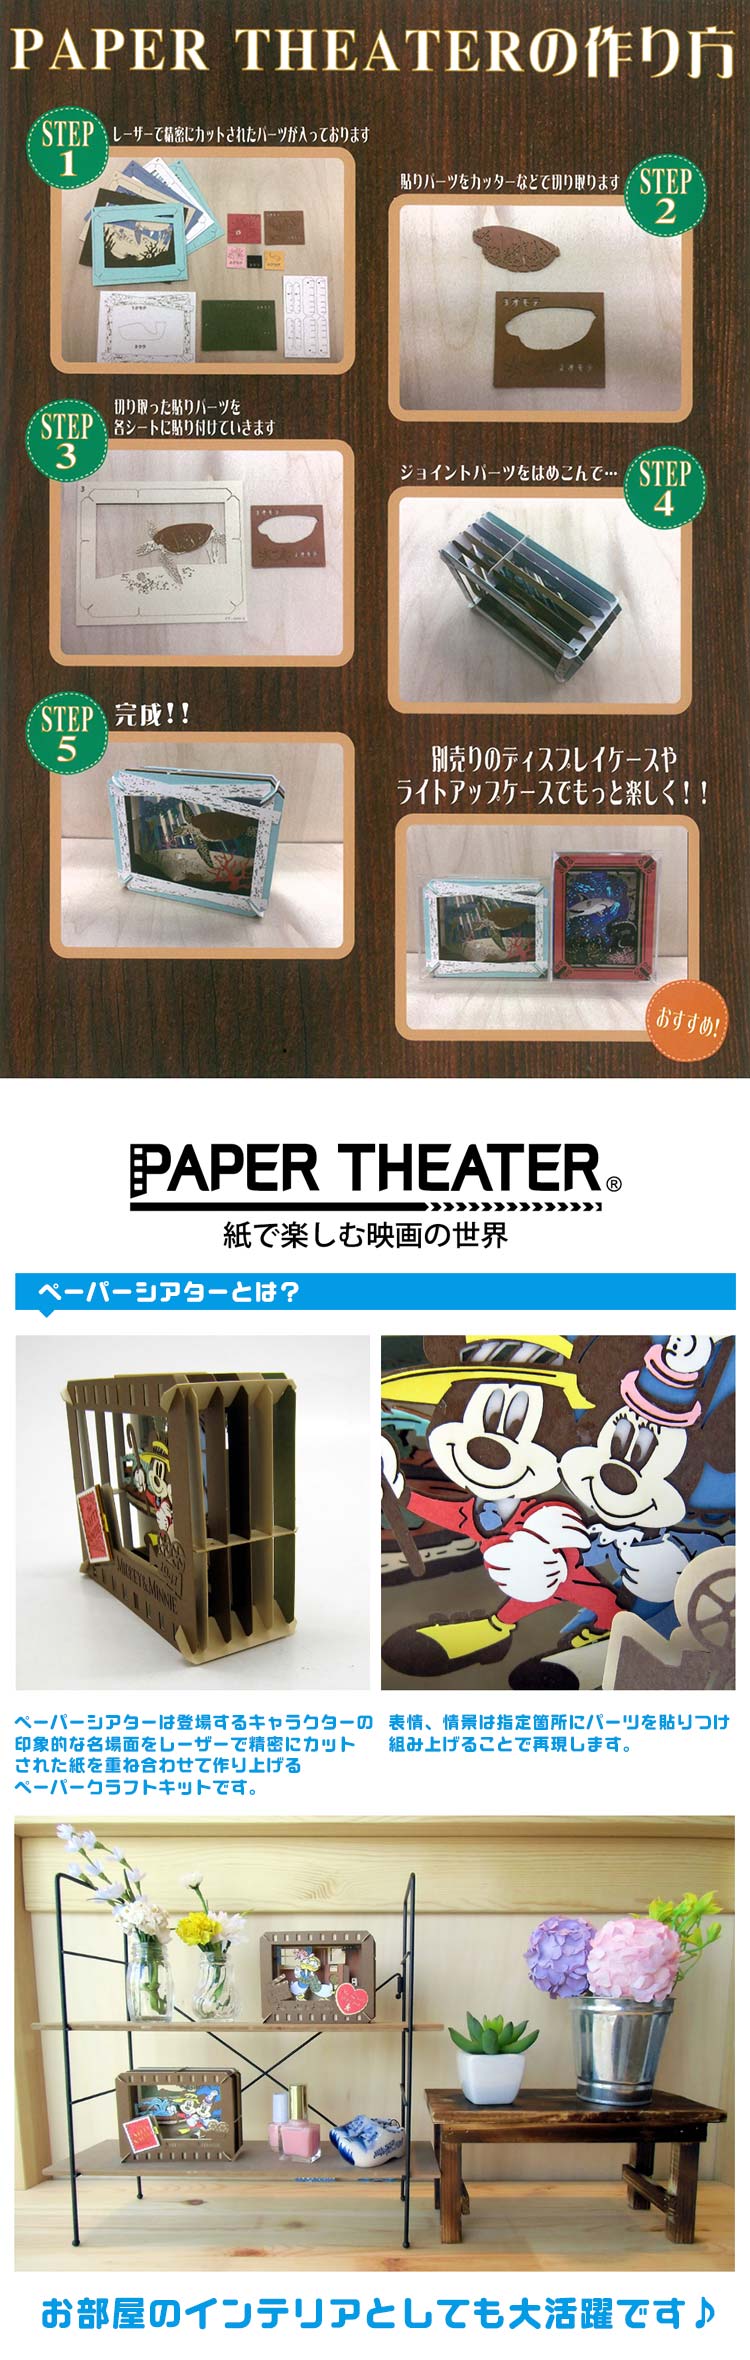 Paper Theater - 火影忍者 火影忍者 vs 佐助